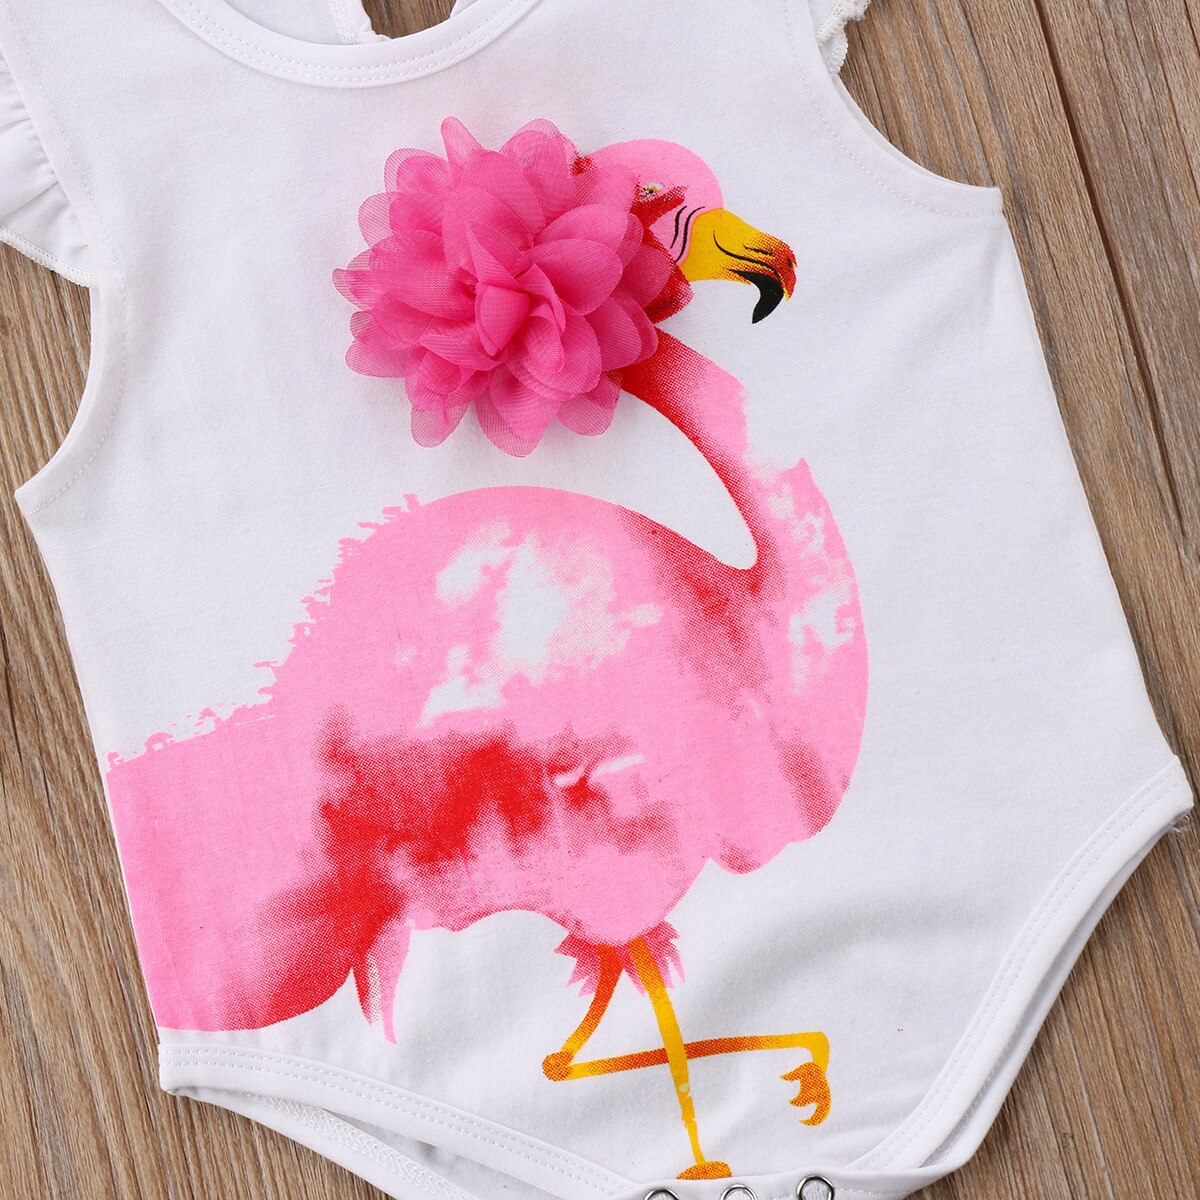 Nyfødte baby baby piger bikini flamingoer flæser romper badetøj outfit sommer baby tøj kostumer badedragter